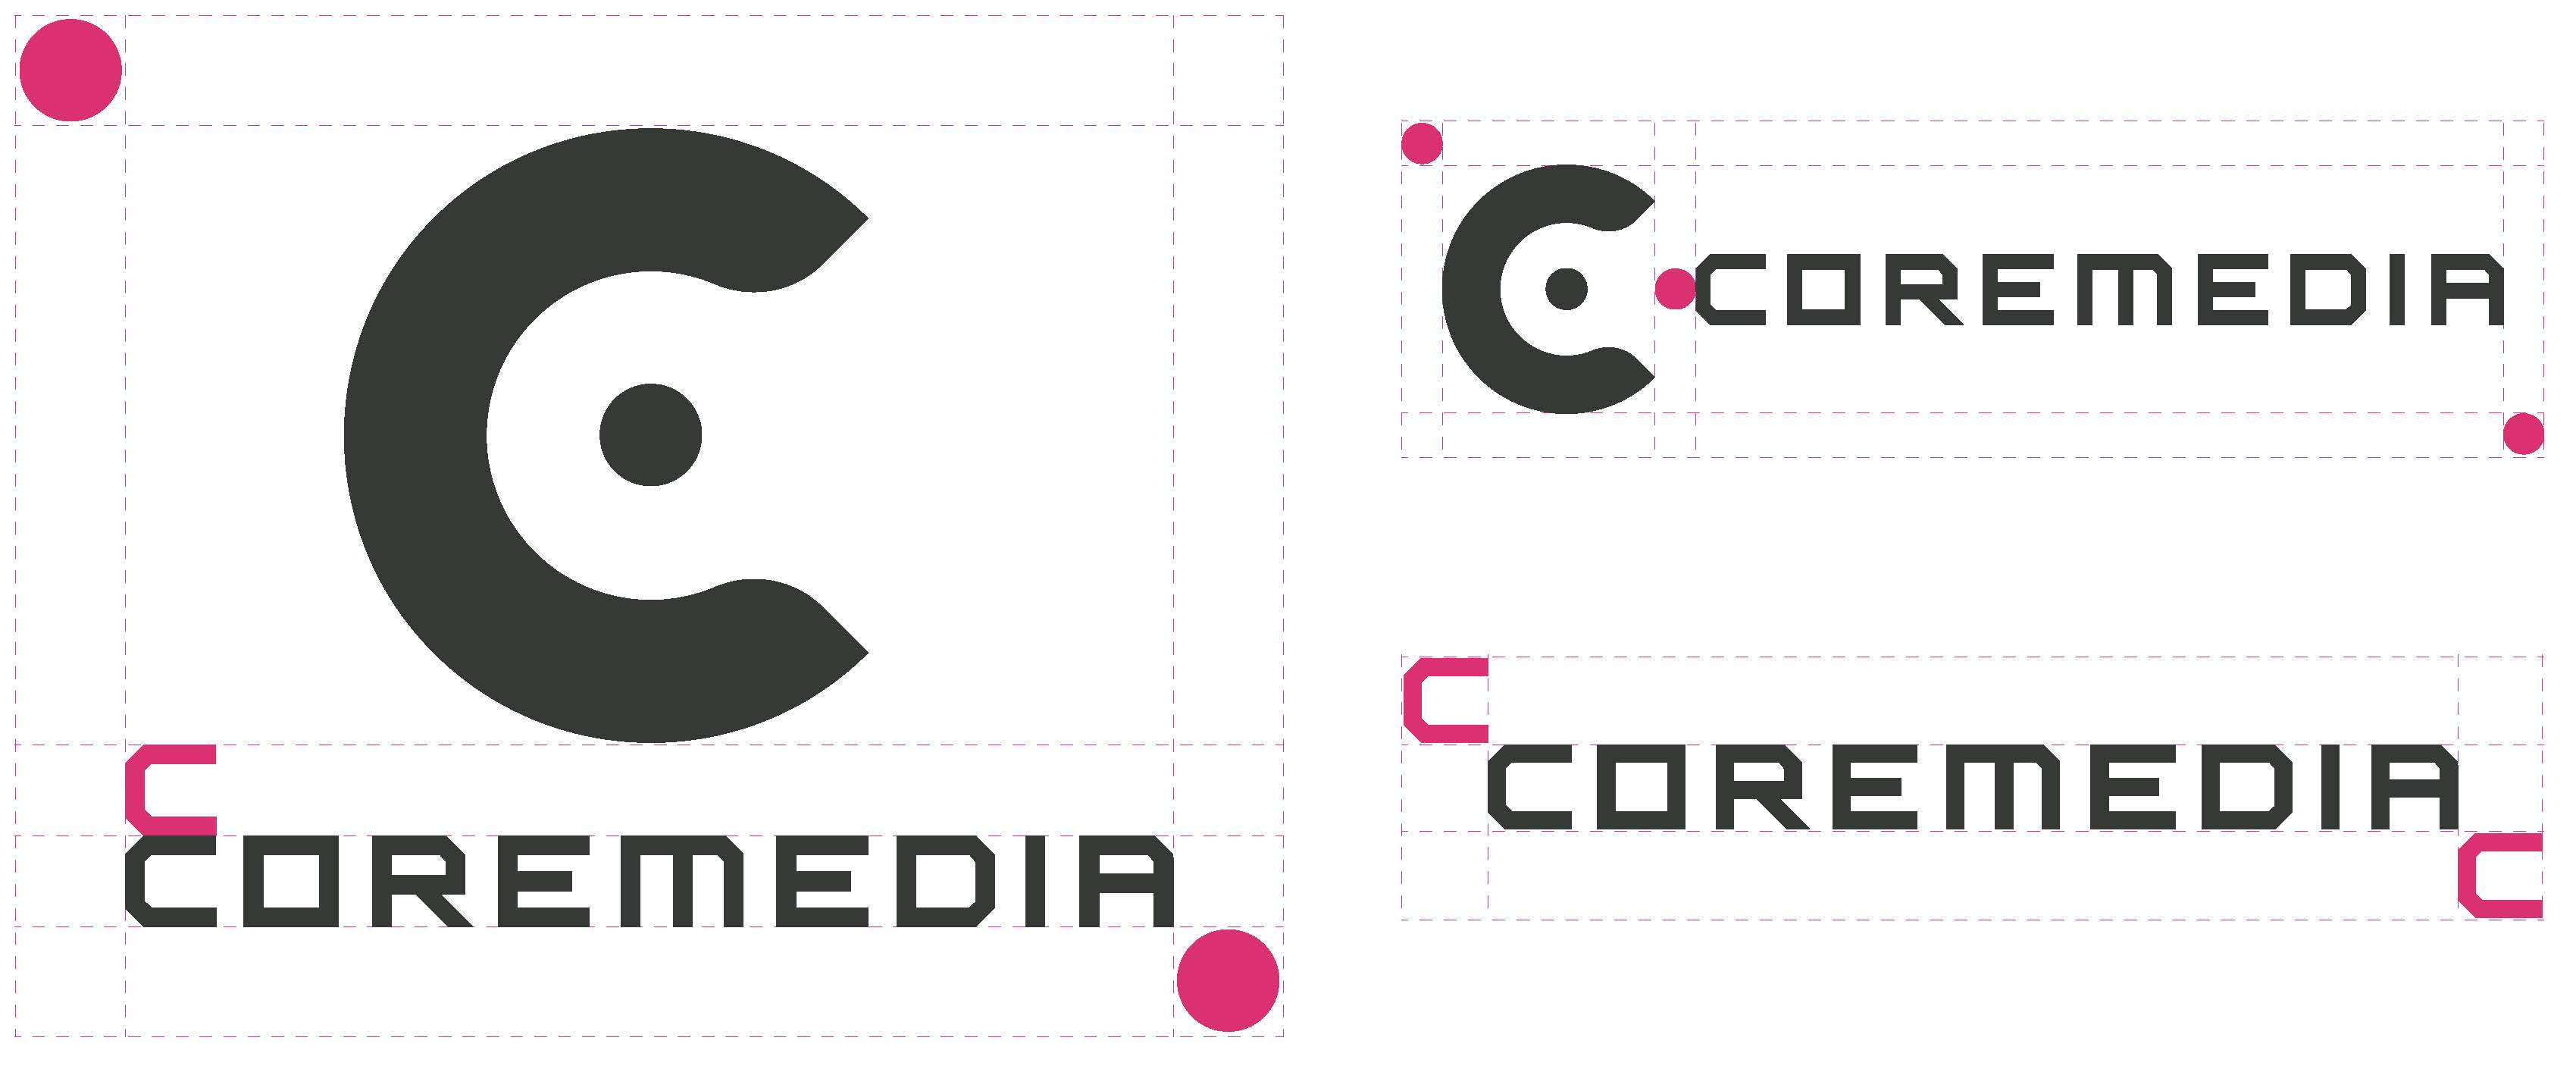 Esempi di logo CoreMedia clearspace